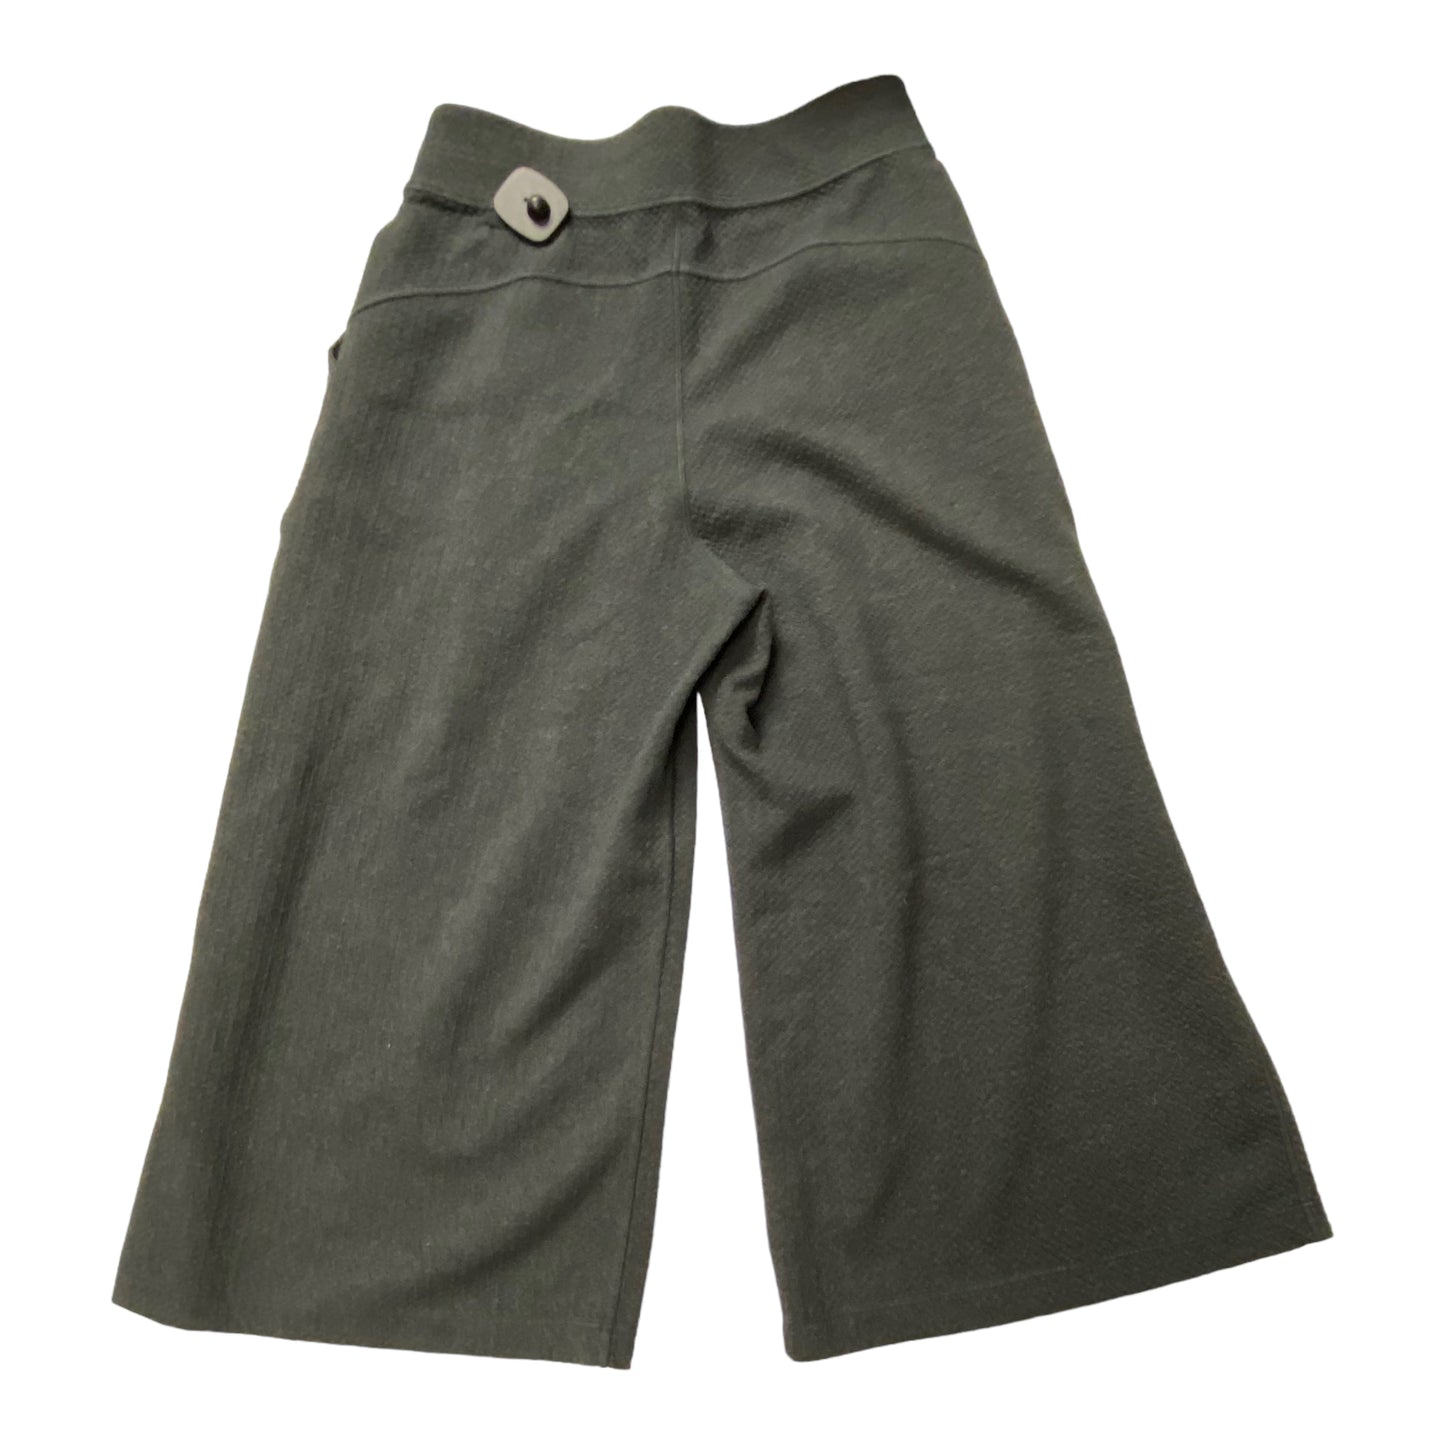 Grey Pants Cropped Lululemon, Size 8